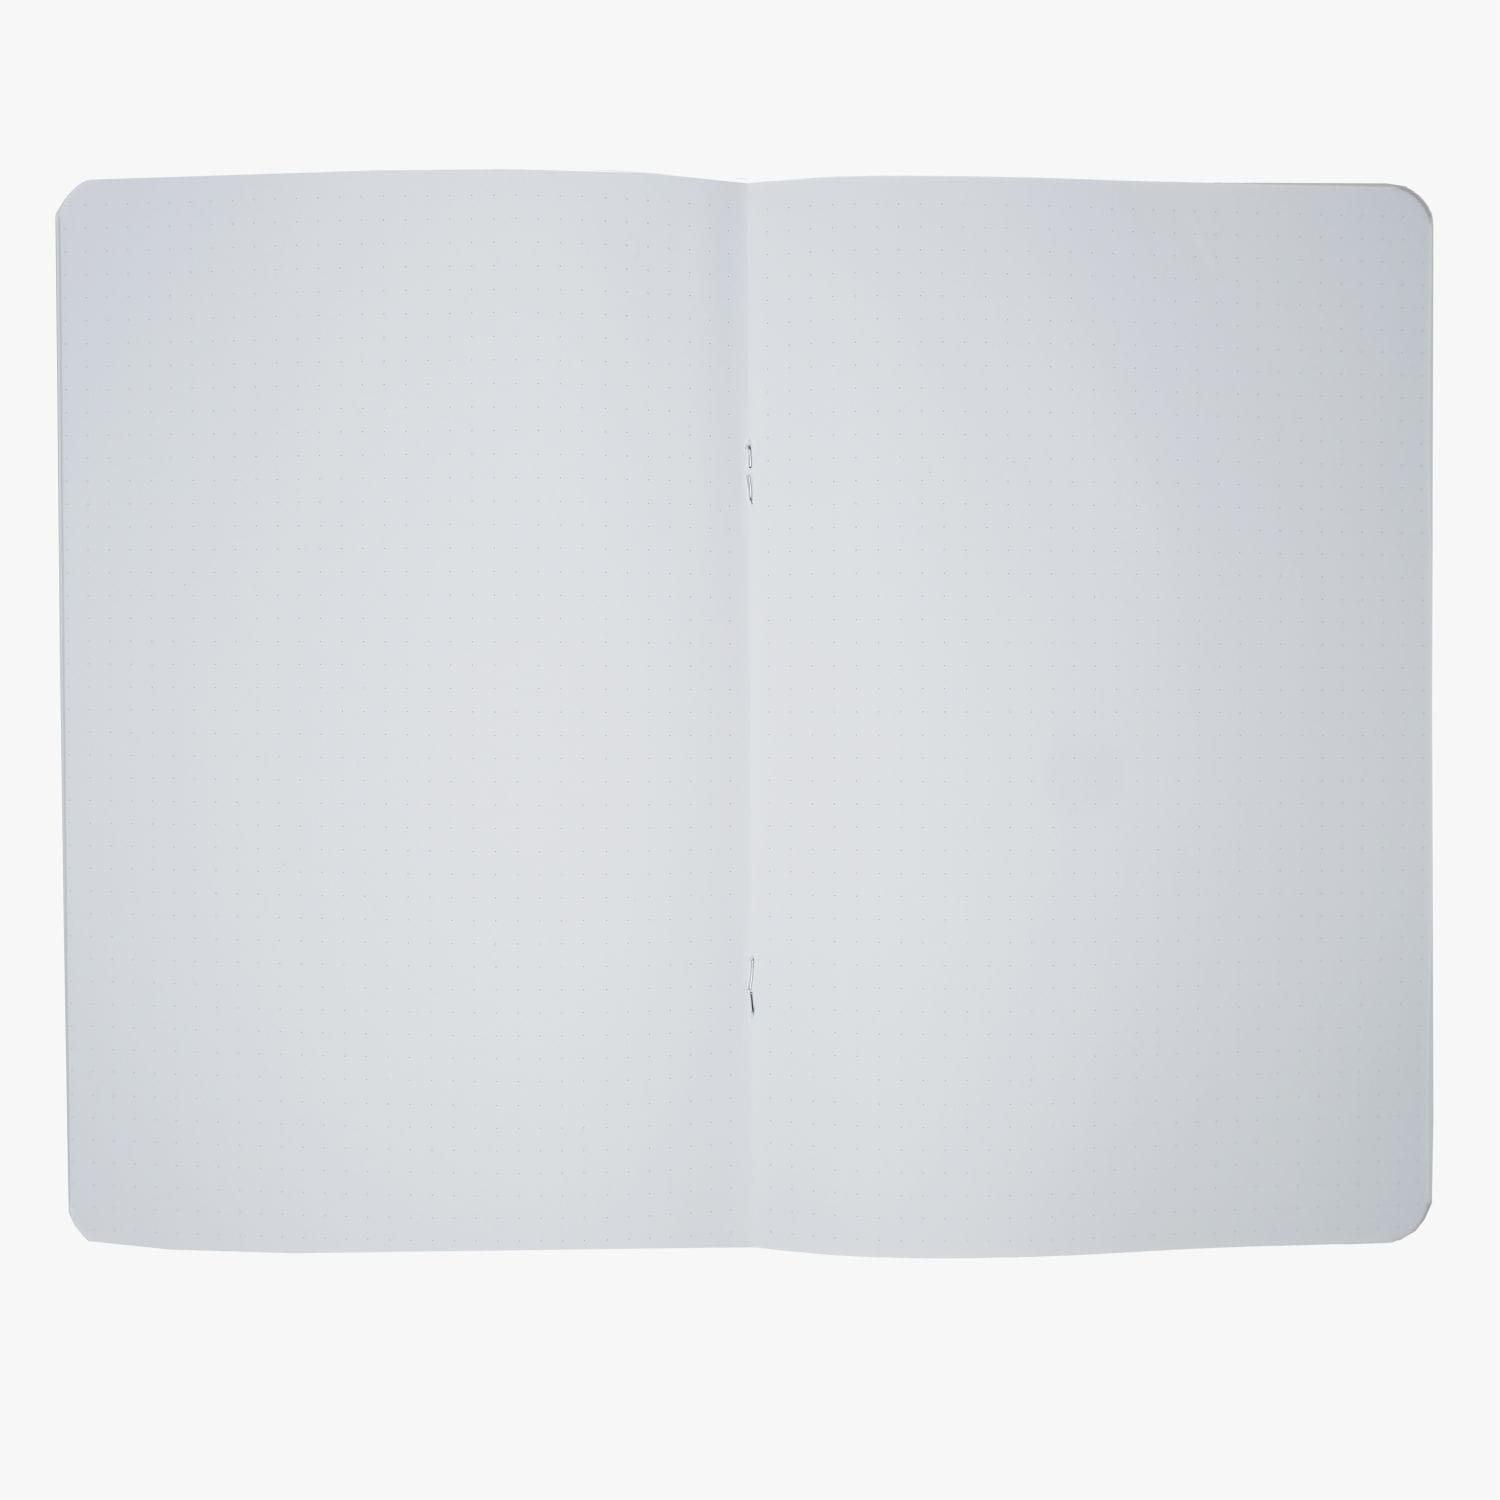 Enchanted Garden est un carnet avec une couverture souple et le papier pointillé de 120g en format A5. Il est parfait pour votre journal, bullet journal, carnet de voyage, bloc de dessin et tous vos autres projets d'écriture.